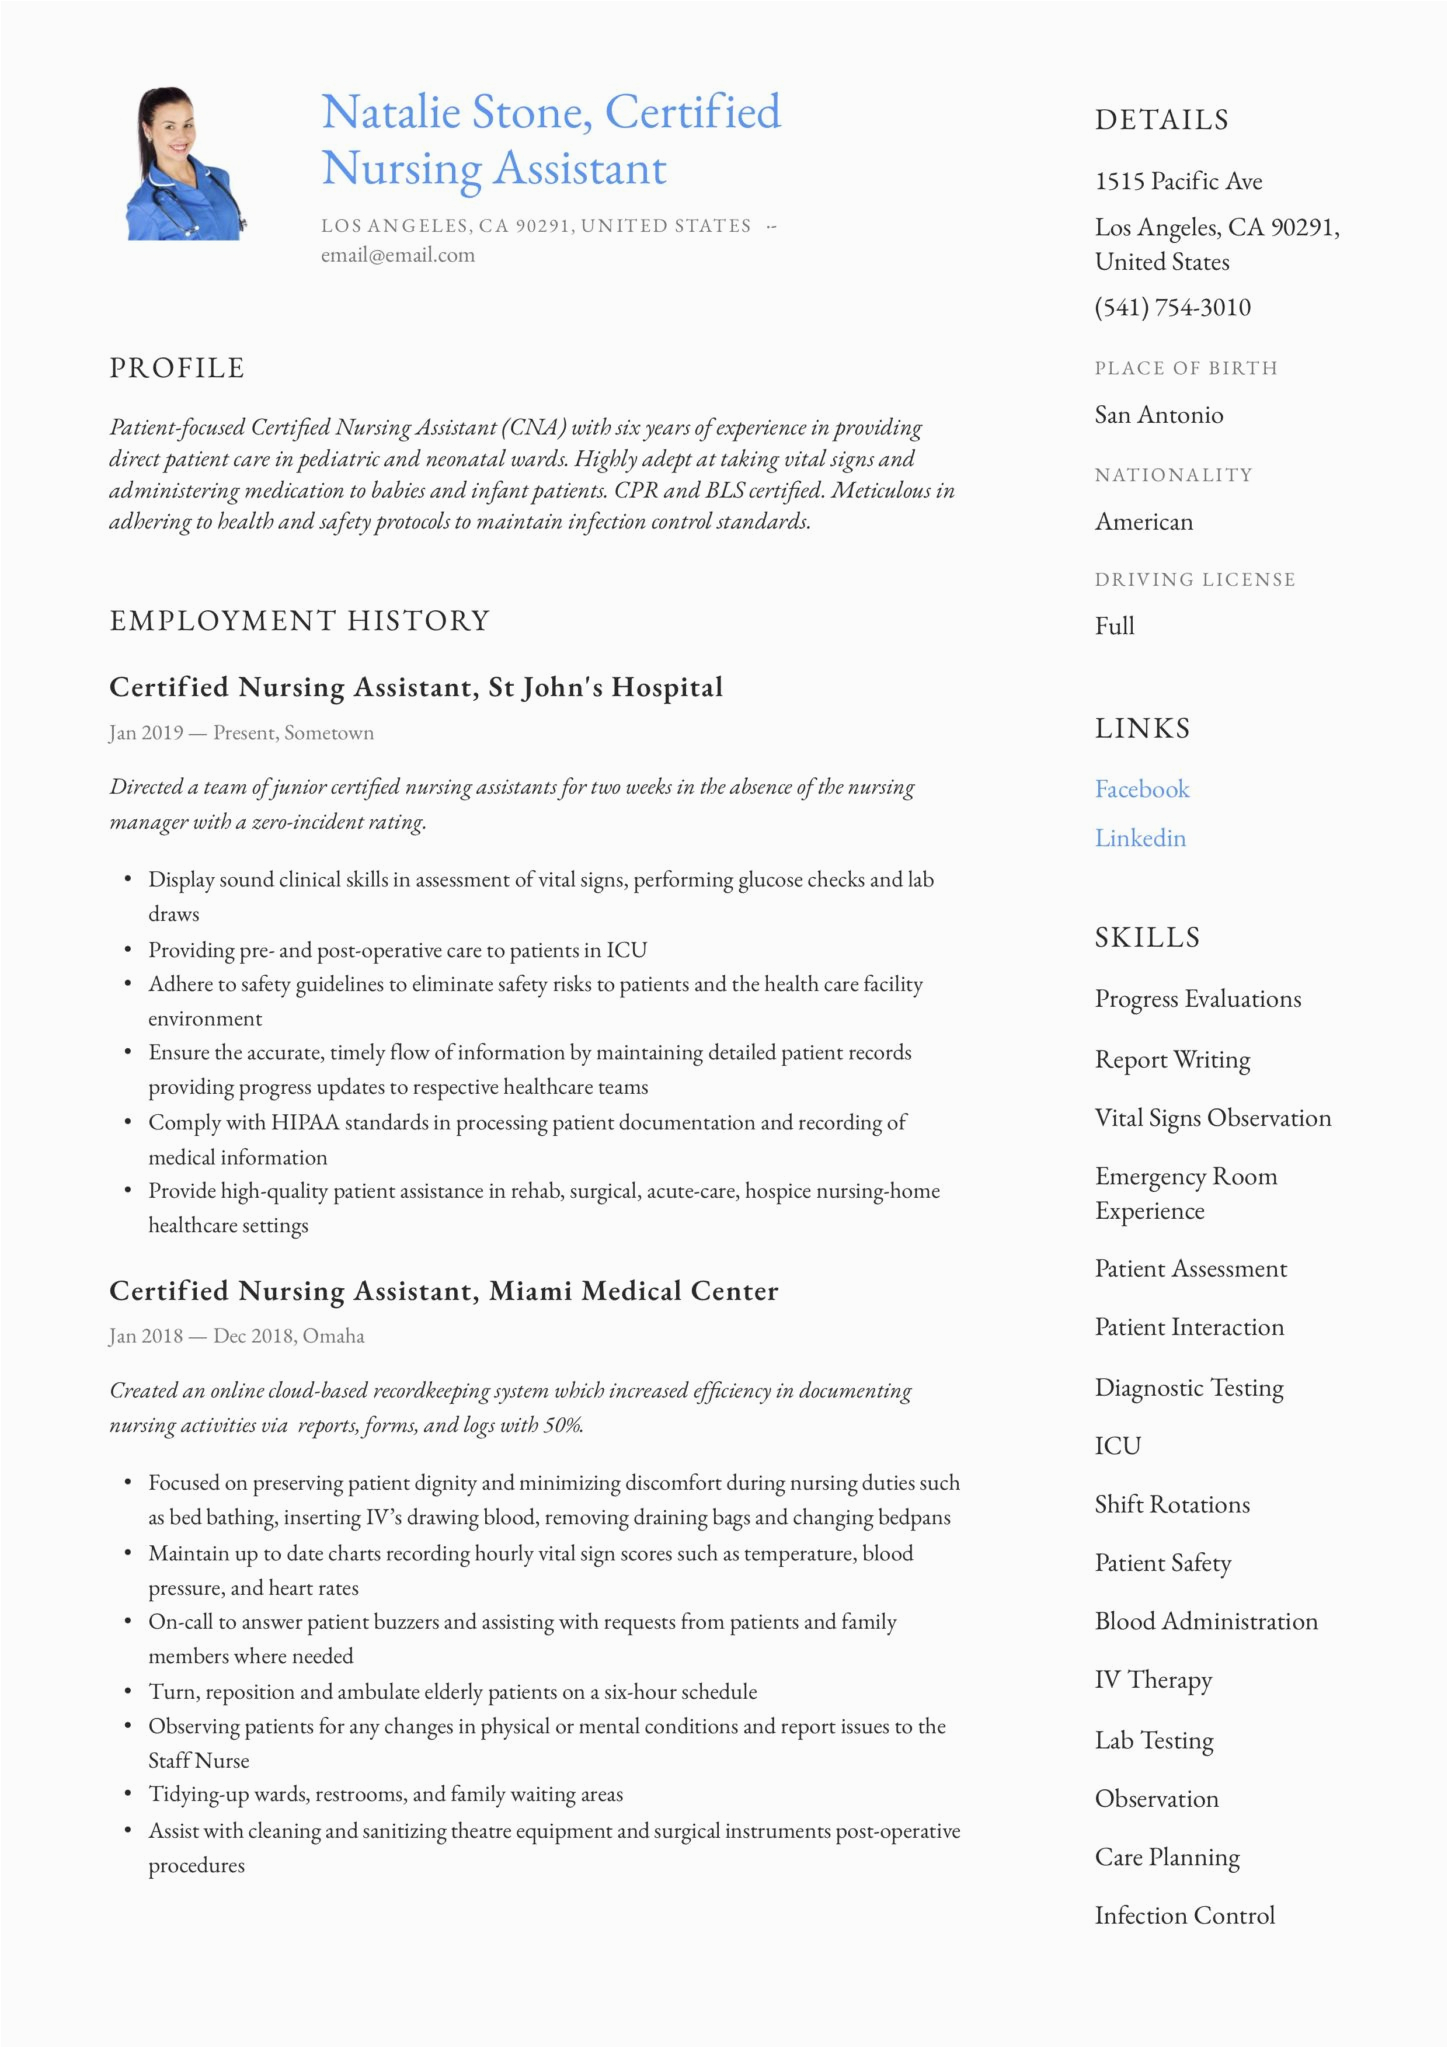 Sample Resume for A Nursing assistant Job Certified Nursing assistant Resume & Writing Guide 12 Templates